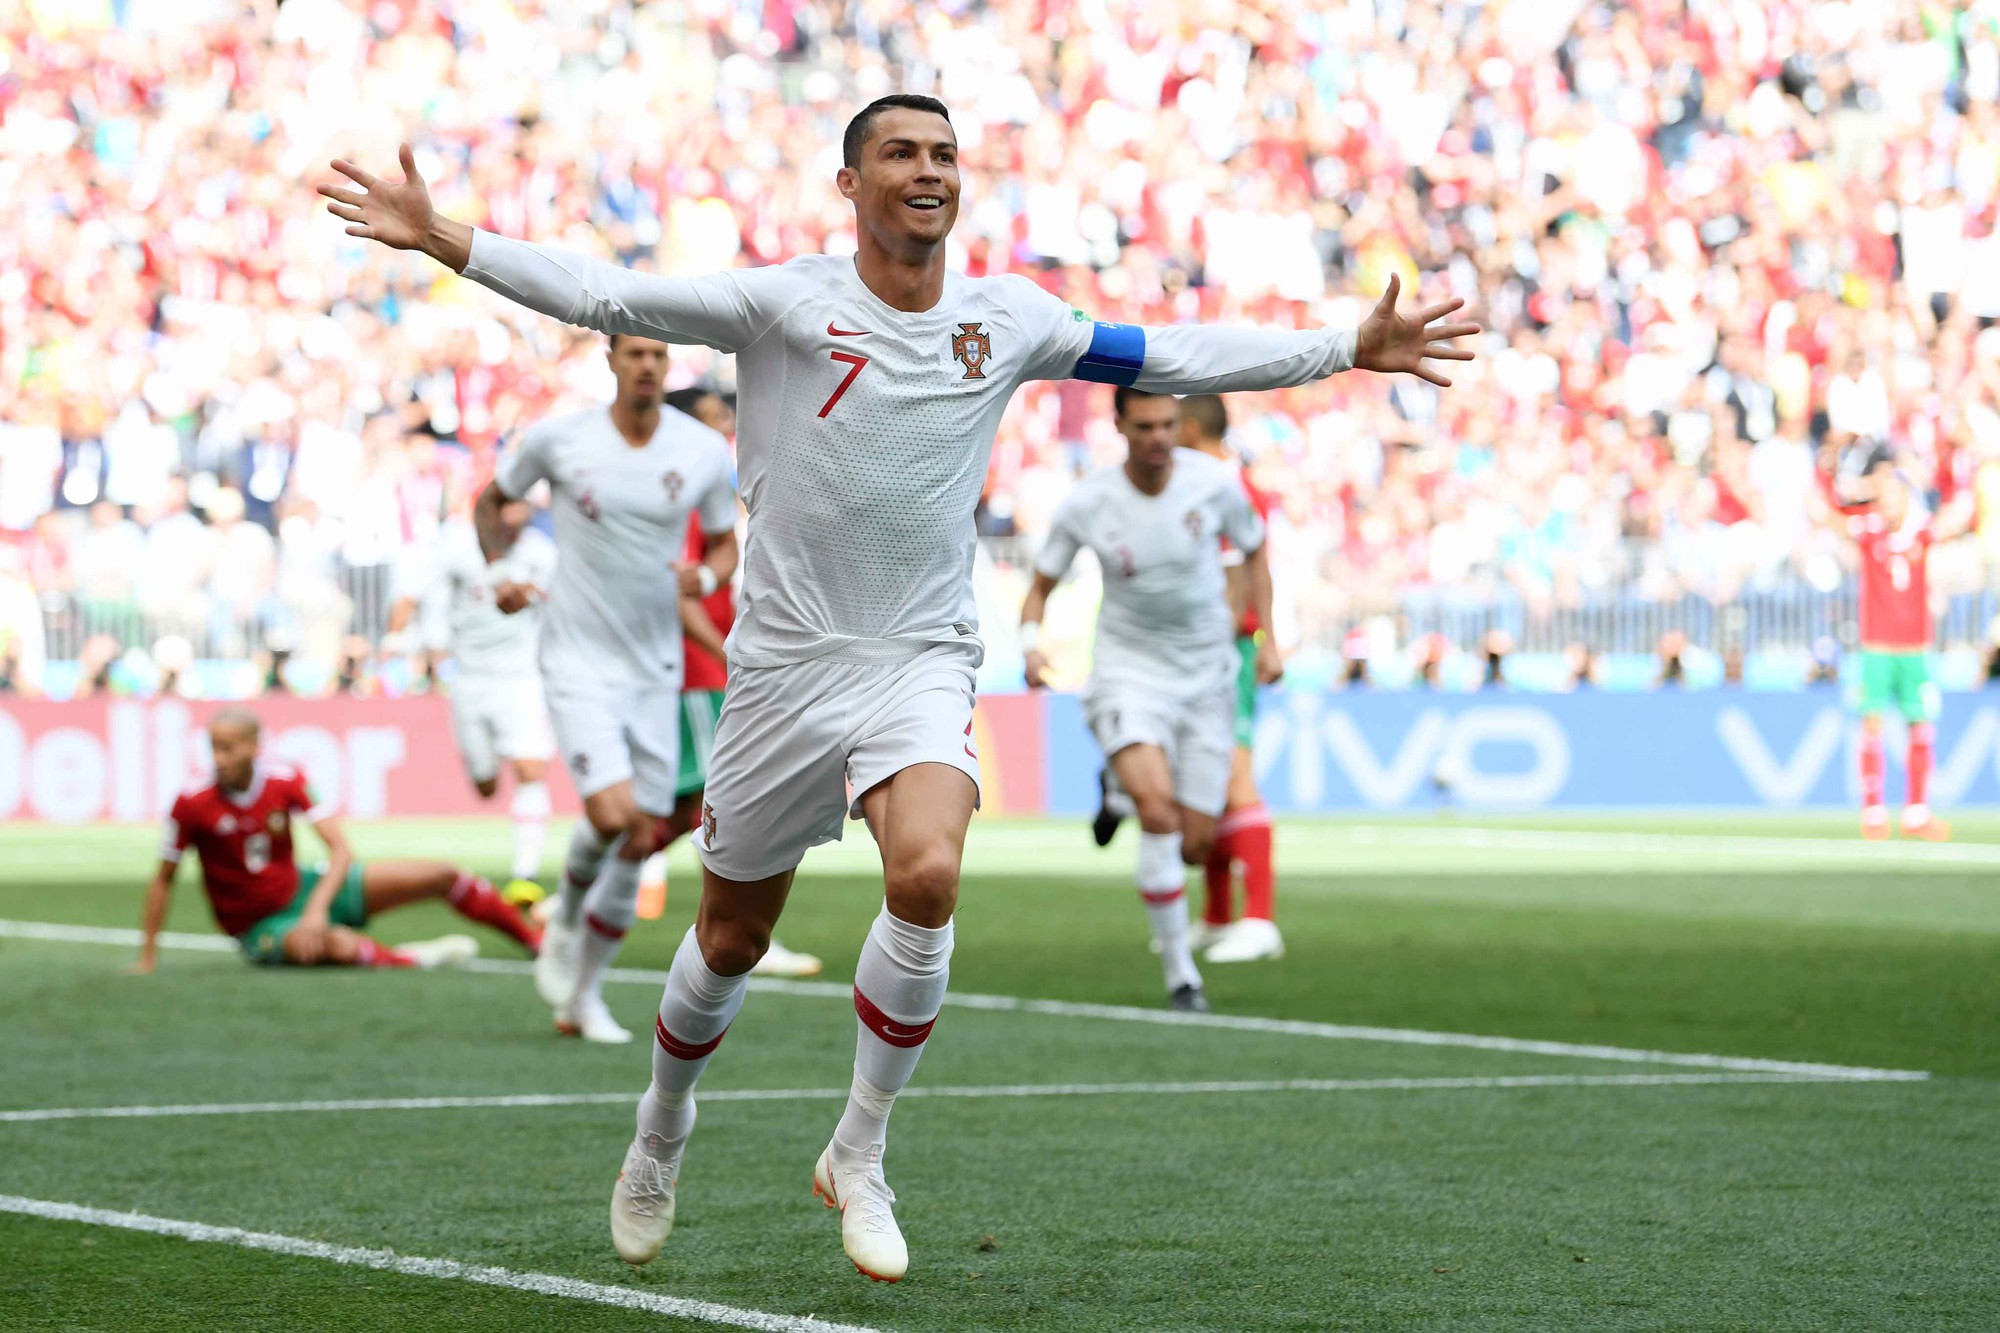 Bồ Đào Nha 1-0 Morocco: Ronaldo ghi bàn, Seleccao chật vật giữ 3 điểm - Ảnh 1.